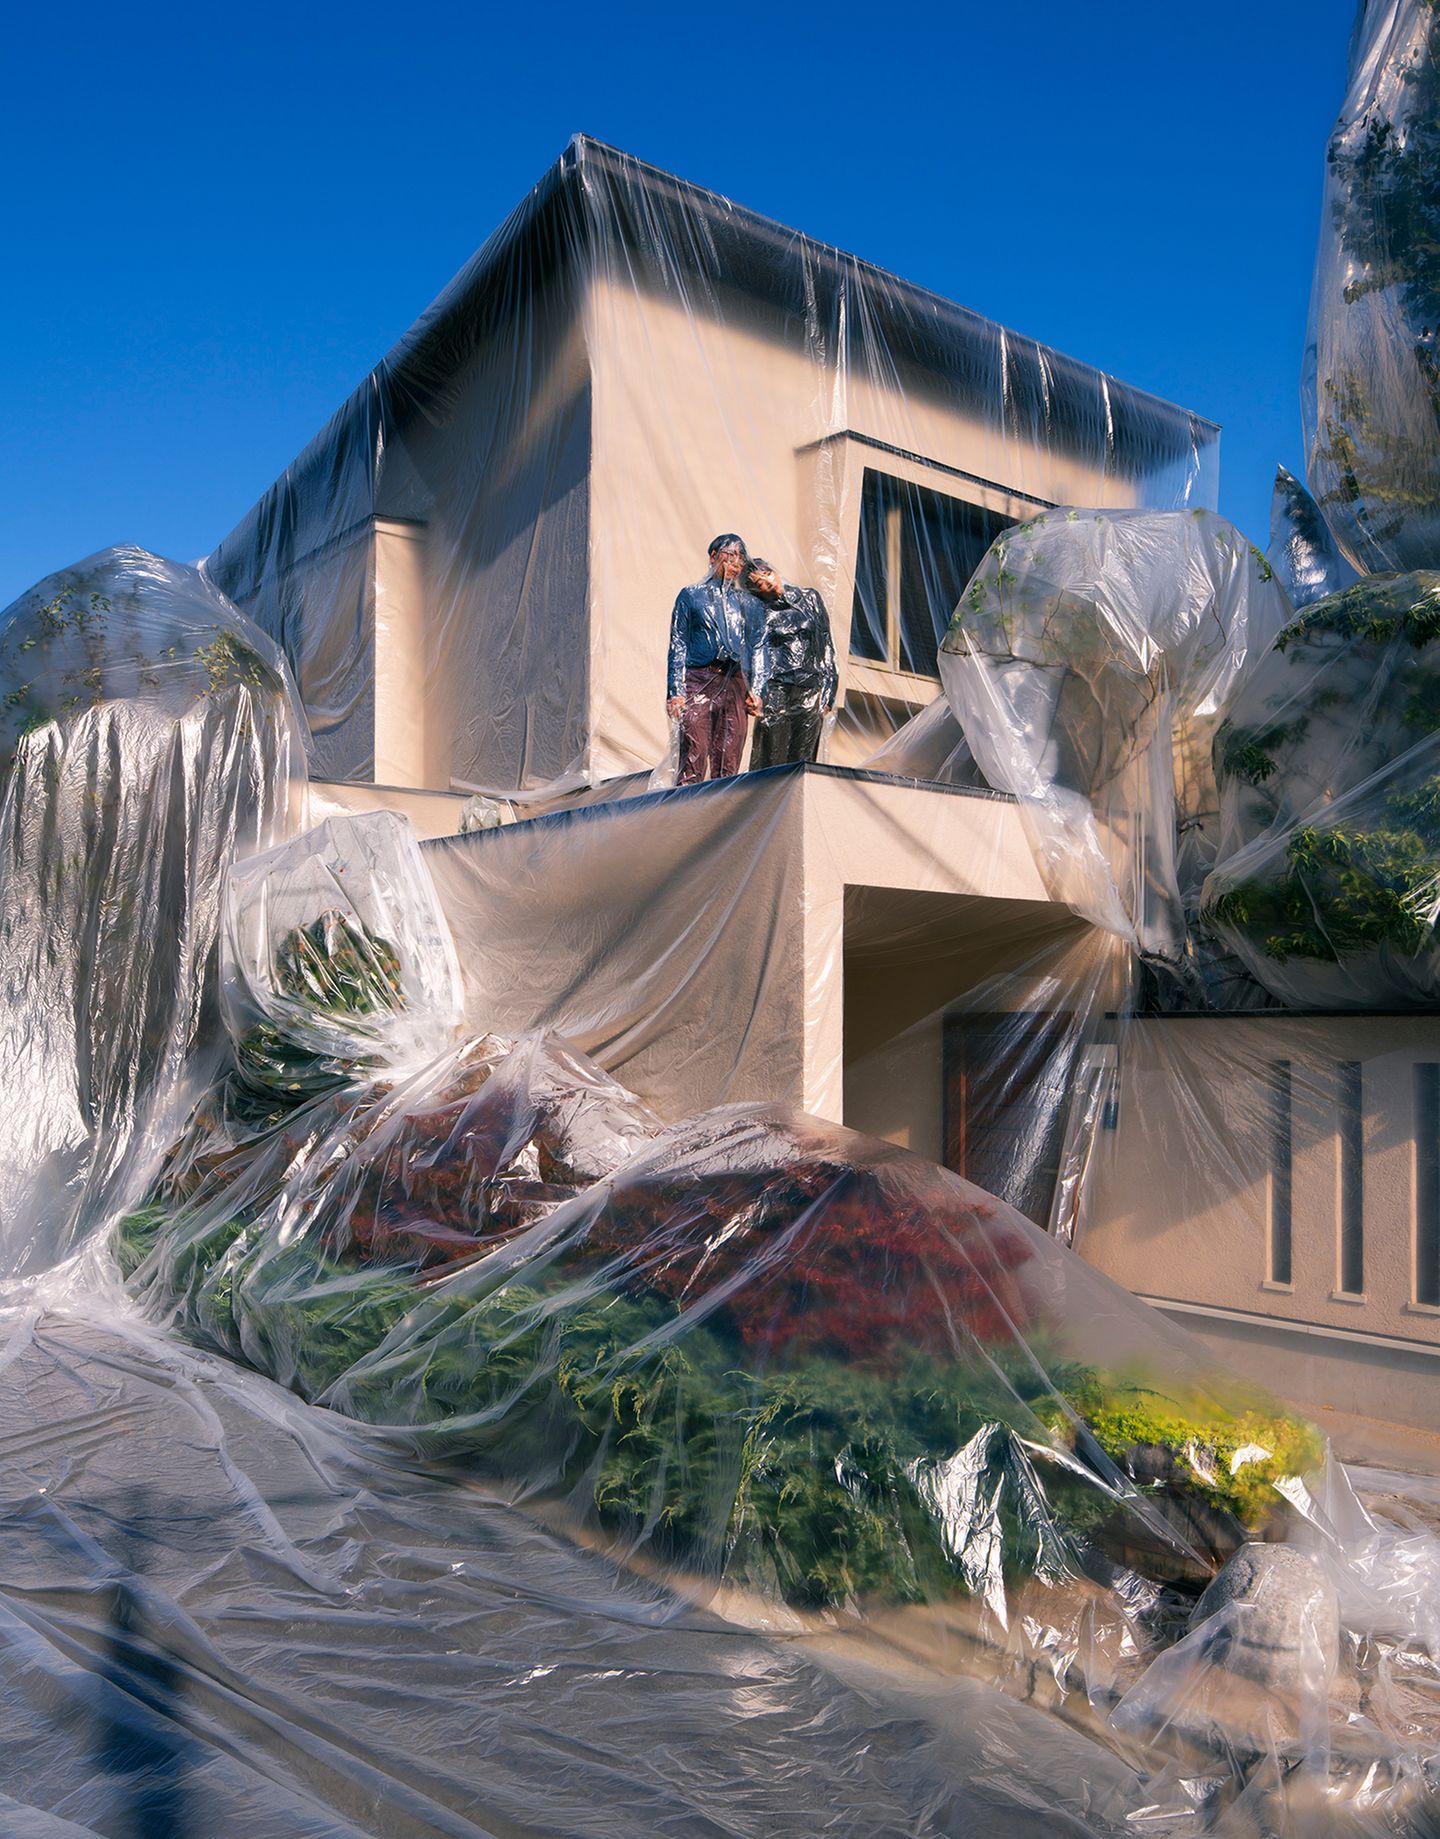 Art Photography Award: Paar und Haus mit Folie umwickelt